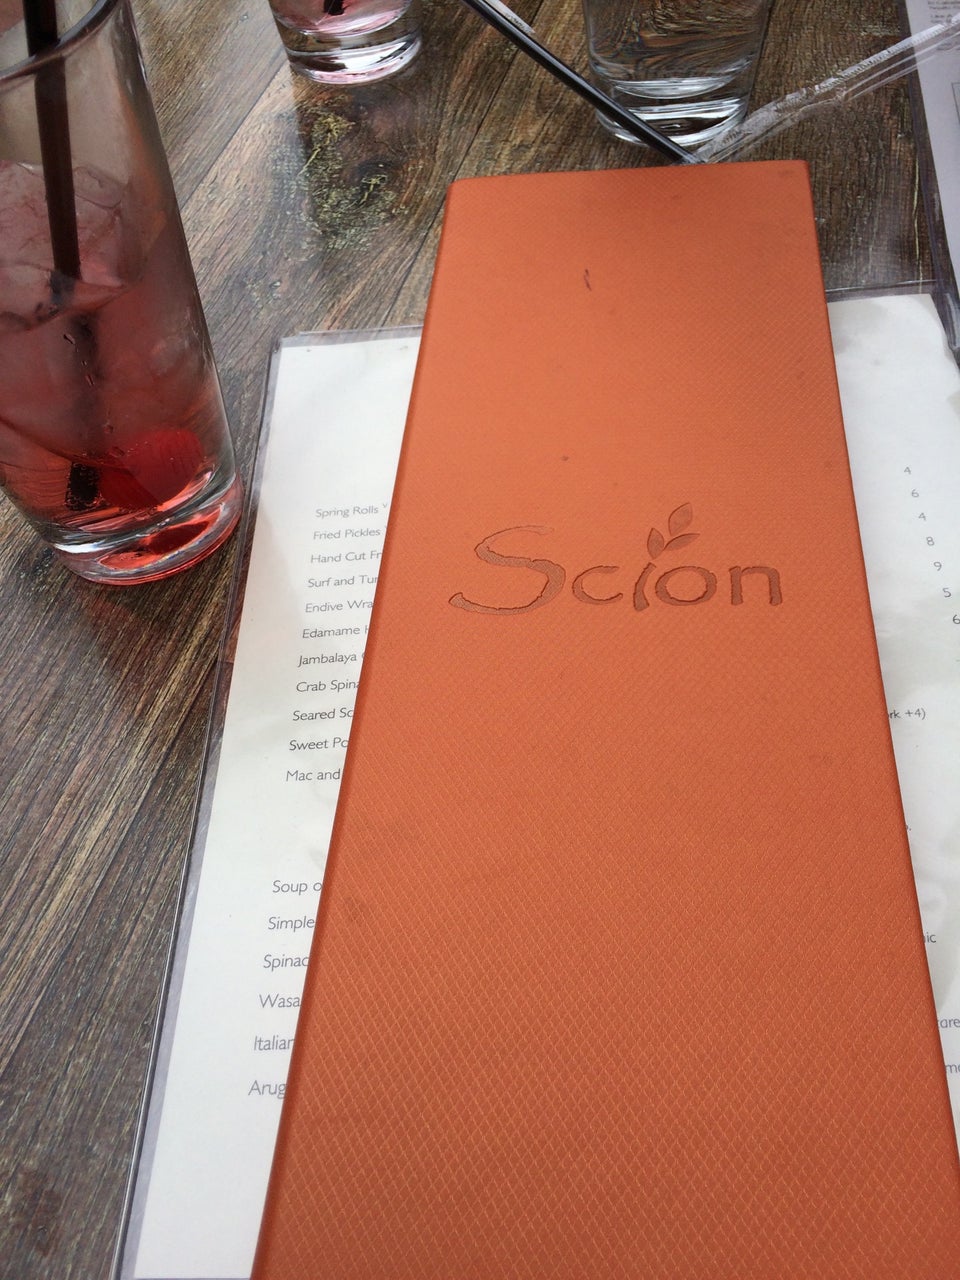 Photo of Scion Restaurant